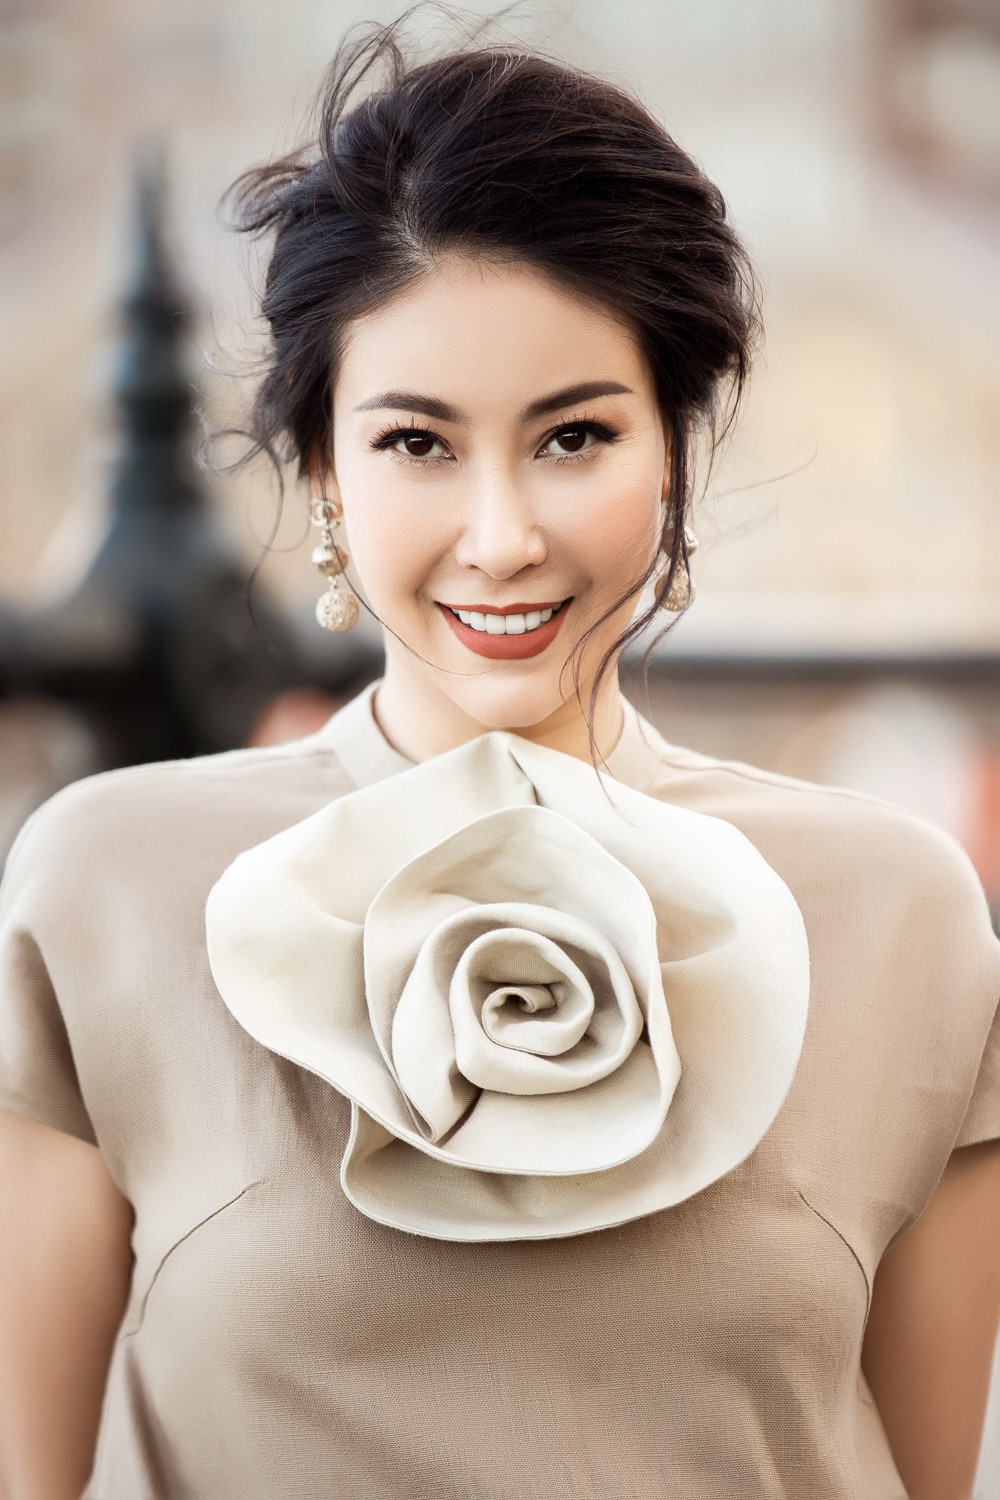 Hoa hậu Hà Kiều Anh là một trong những người đẹp Việt giữ được phong độ ổn định suốt nhiều năm qua. Bí quyết được chị chia sẻ rằng, cách sống tích cực, thoải mái và tập thể dục thường xuyên sẽ giúp cuộc sống luôn.